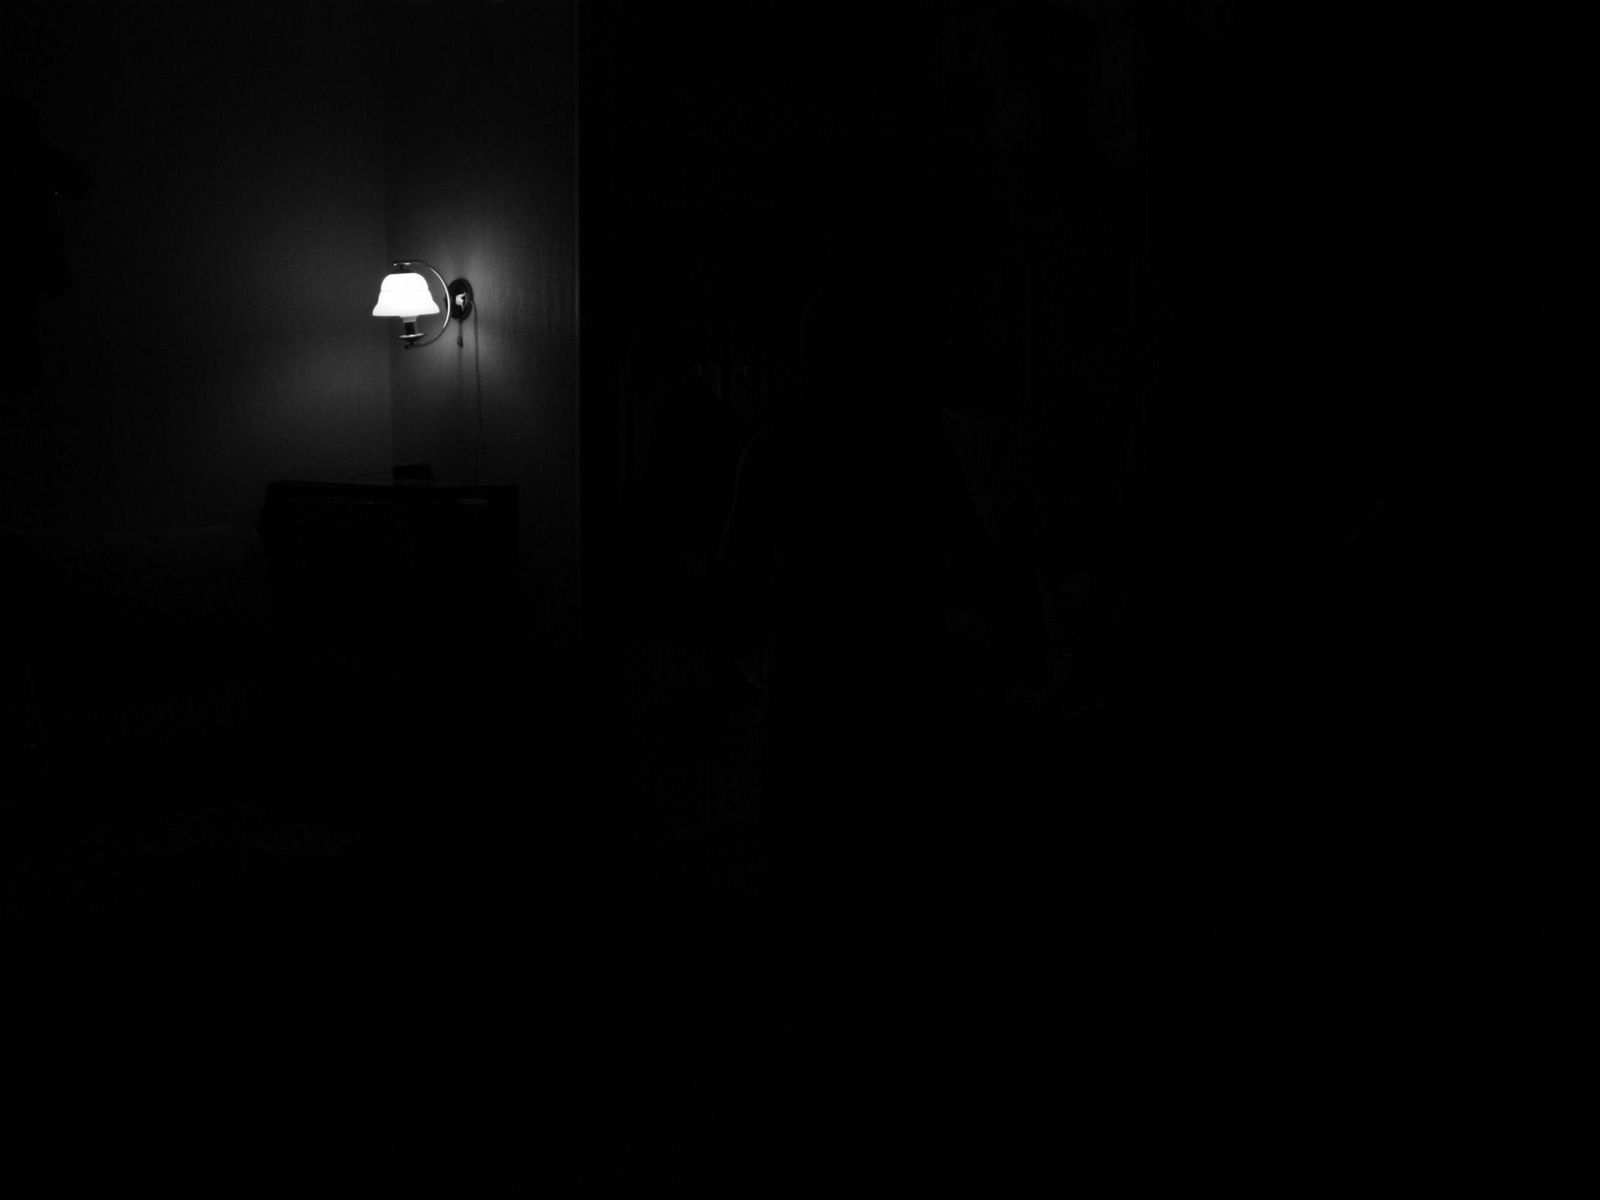 Погасив свет комната погрузилась во мрак впр